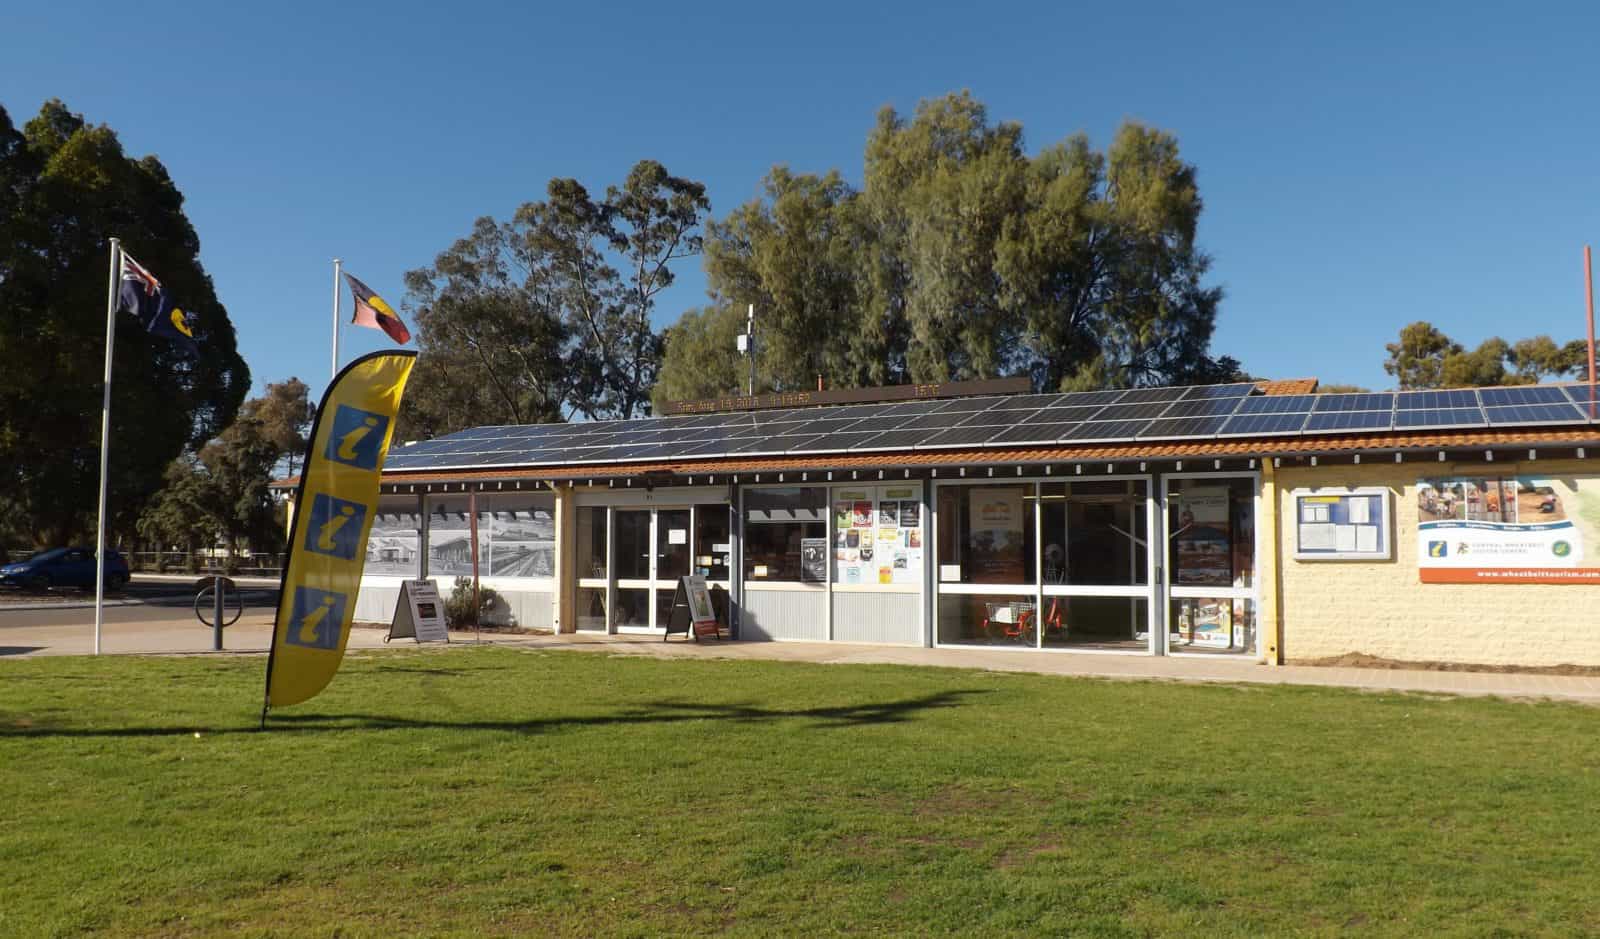 Central Wheatbelt Visitor Centre, Merredin, Western Australia